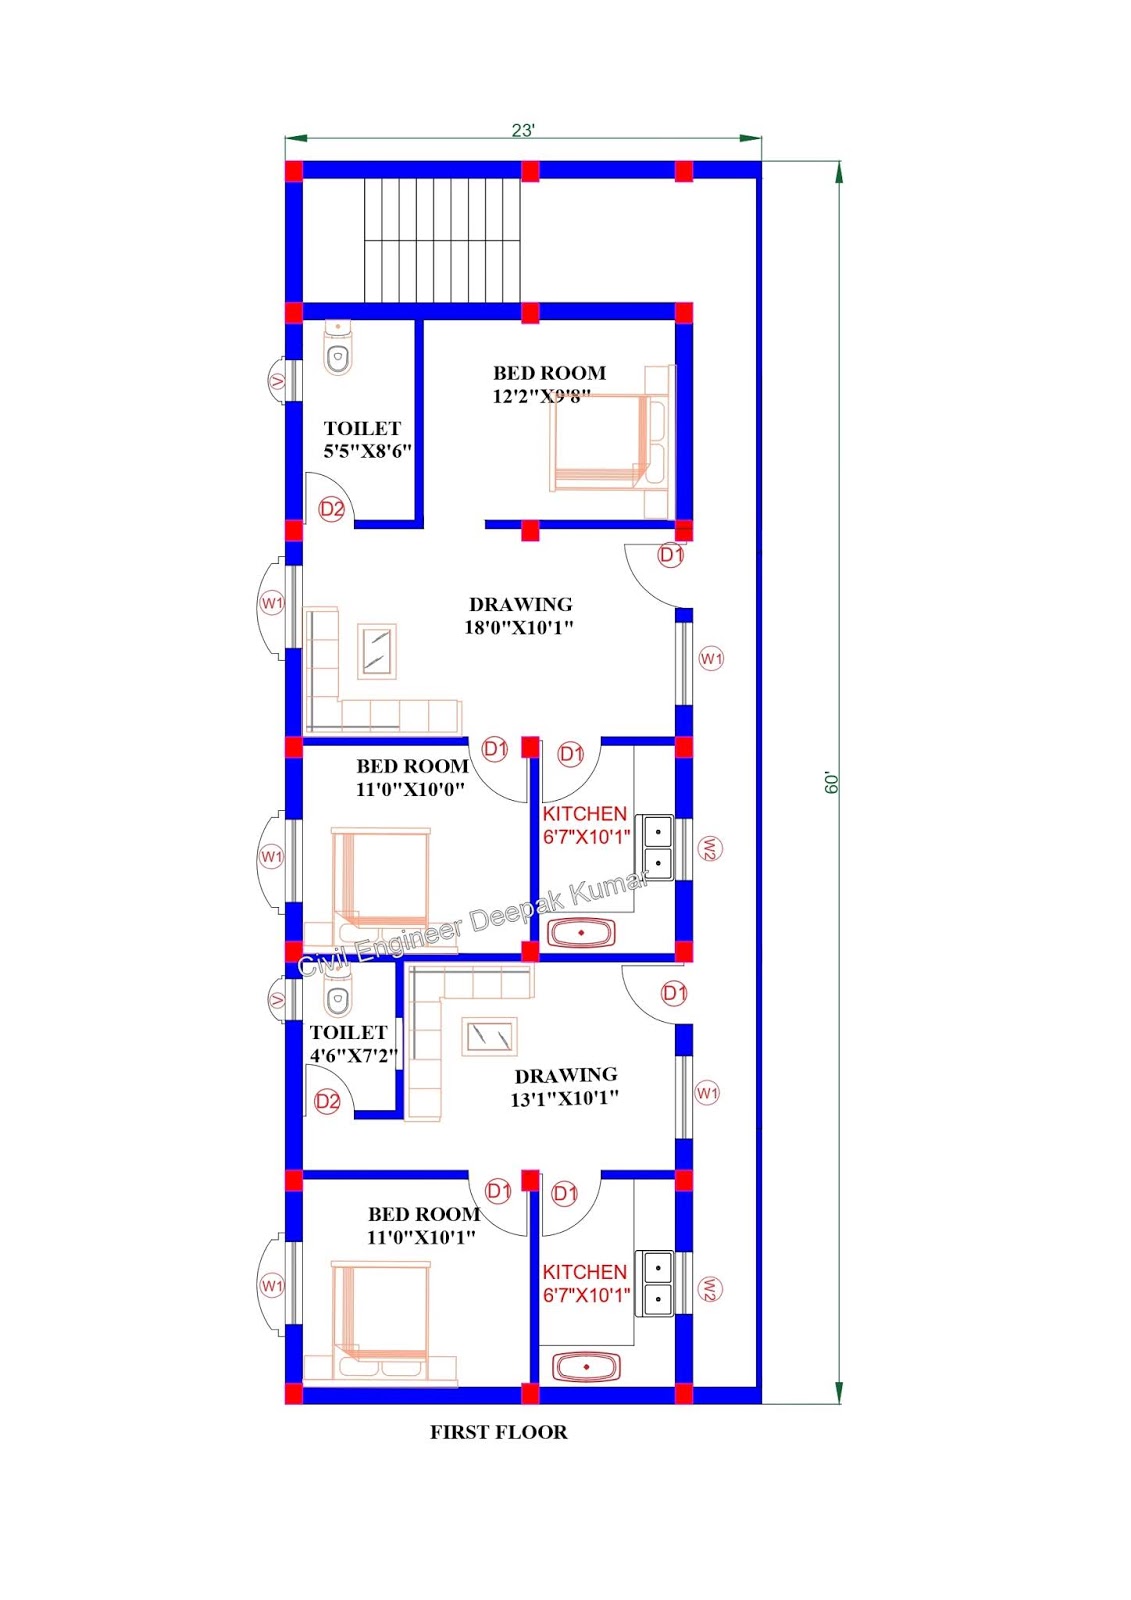 Civil Engineer Deepak Kumar 23 X 60 feet House Plan for